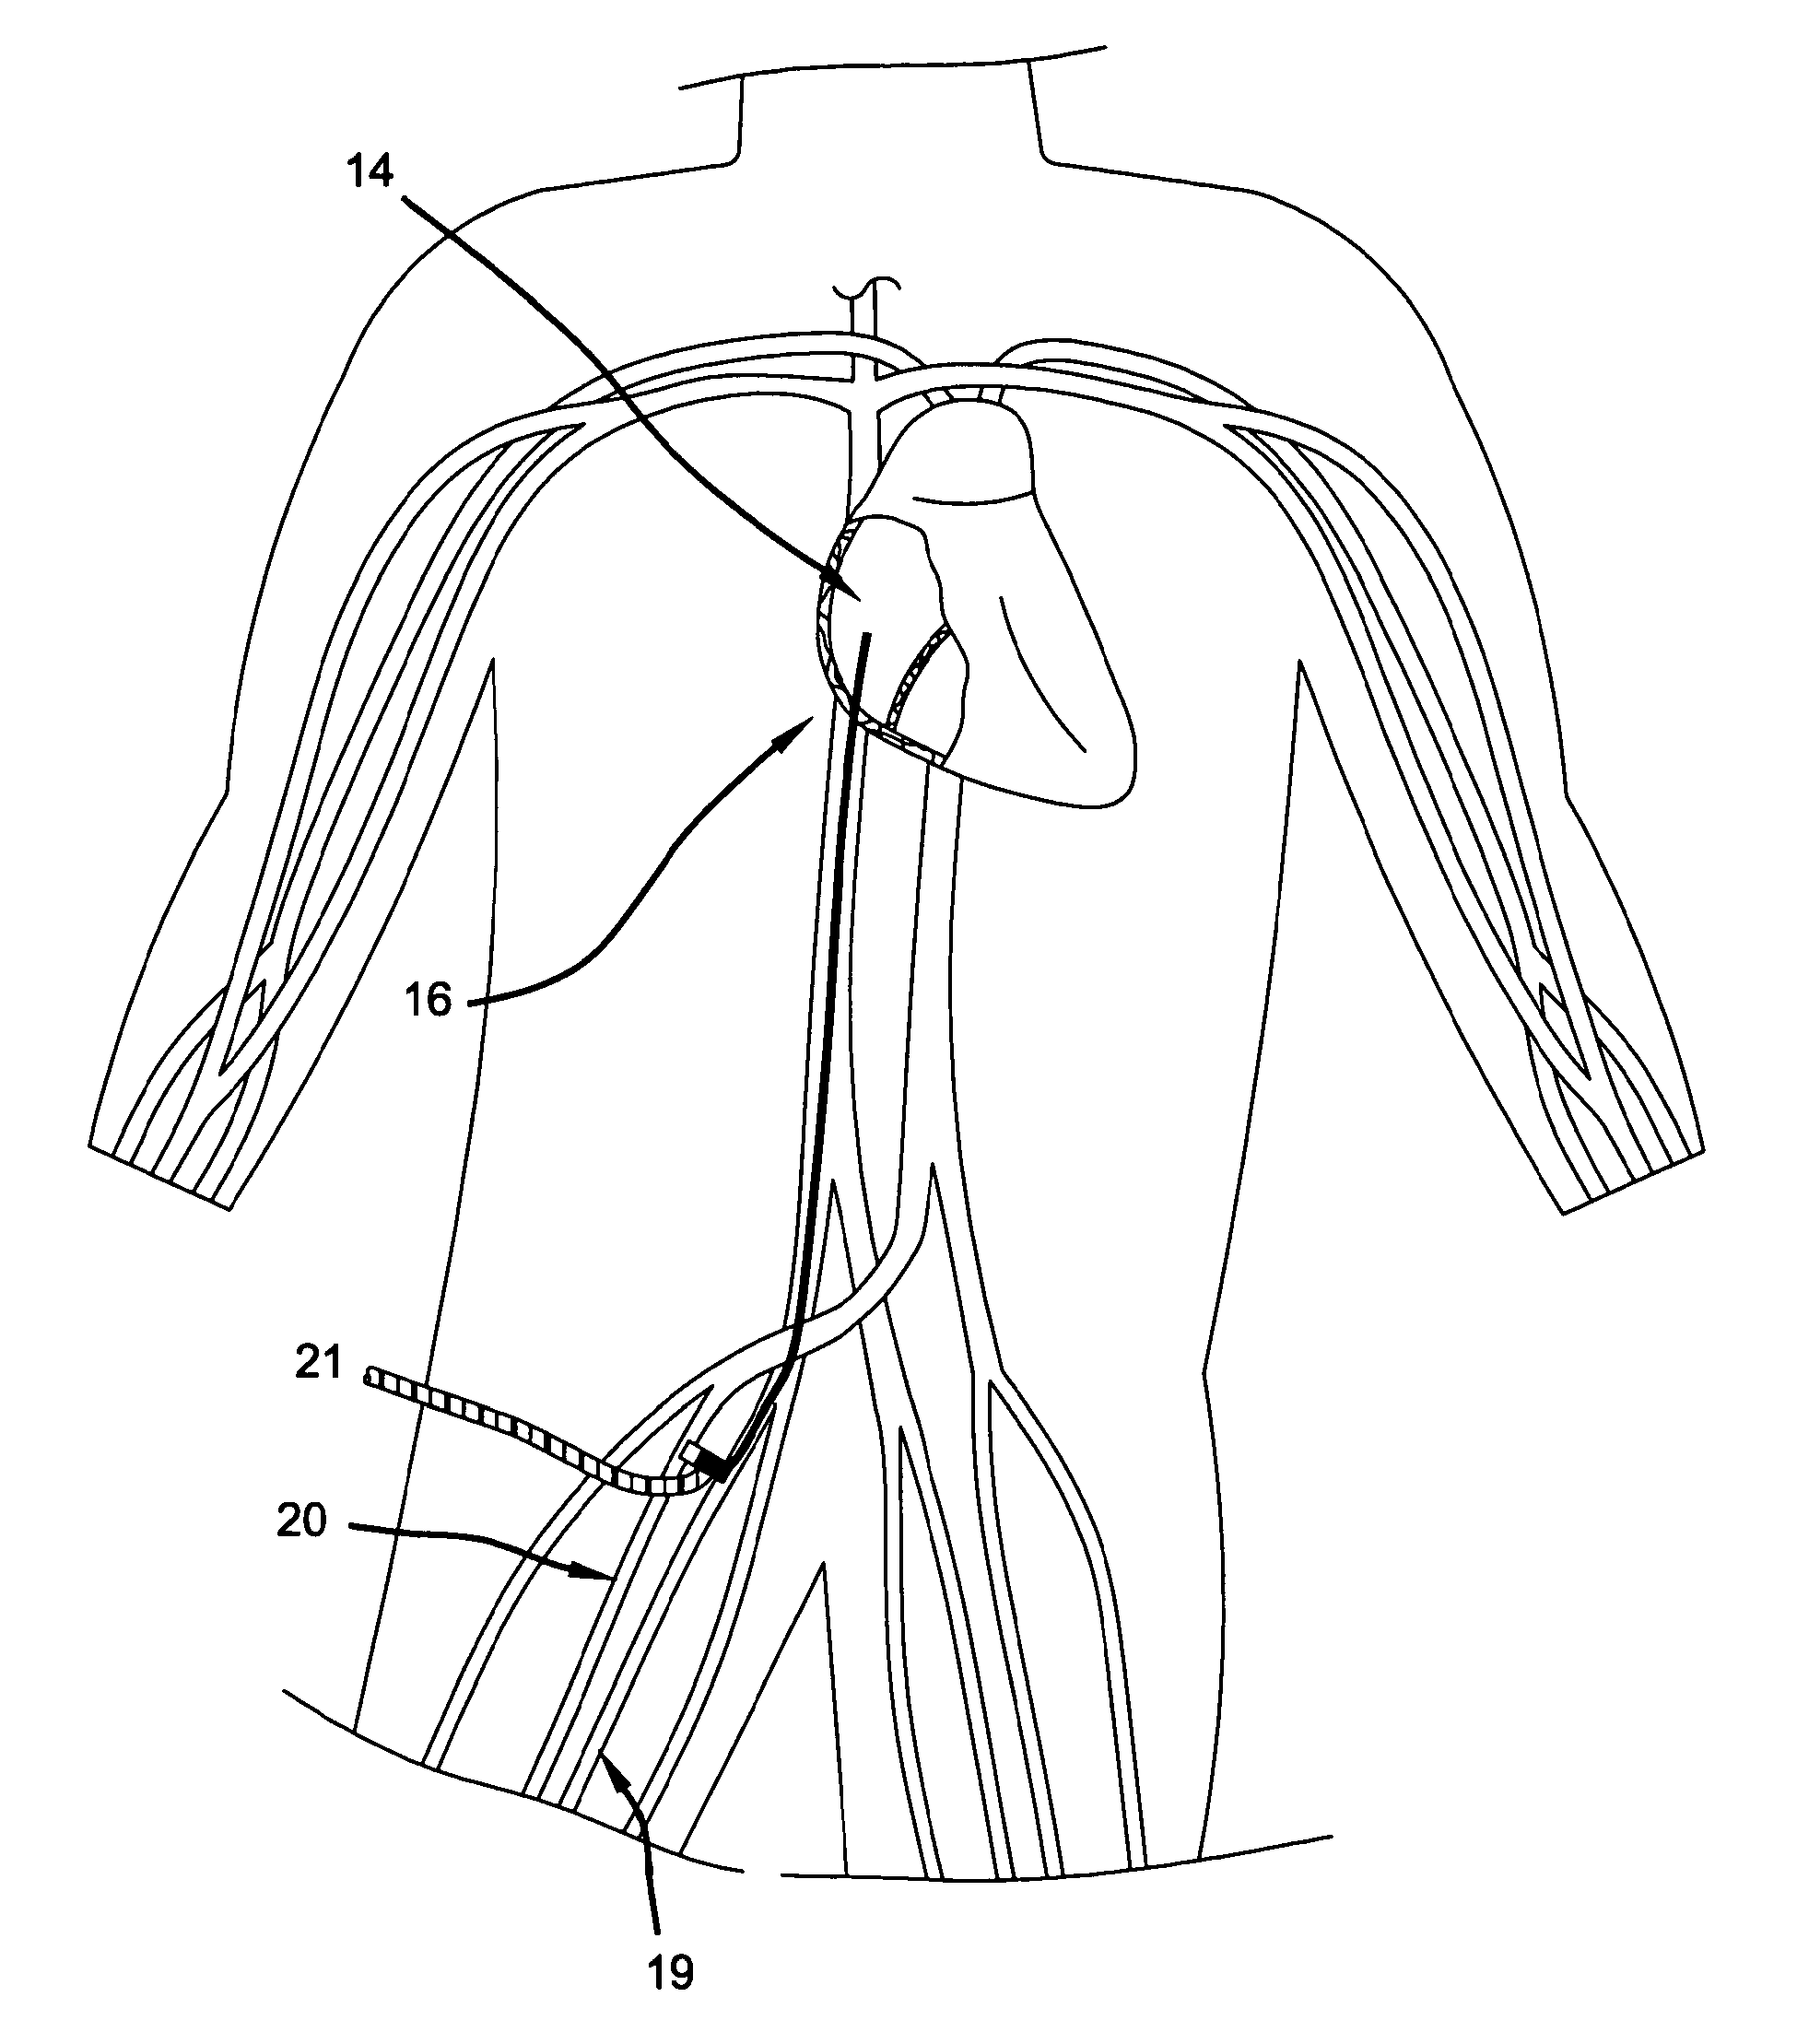 Hybrid arteriovenous shunt